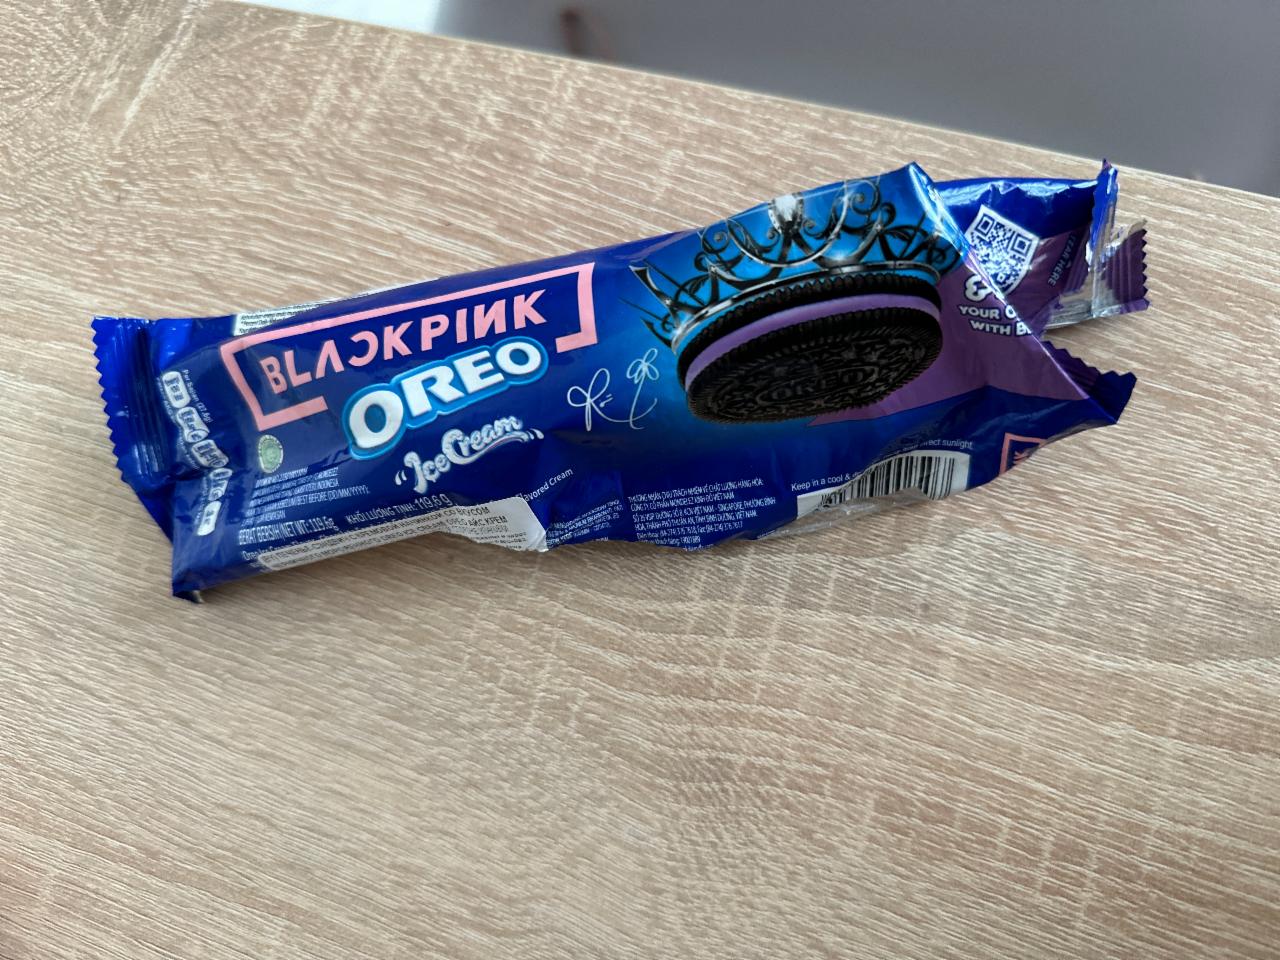 Фото - печенье шоколадное орео Balckpink Oreo